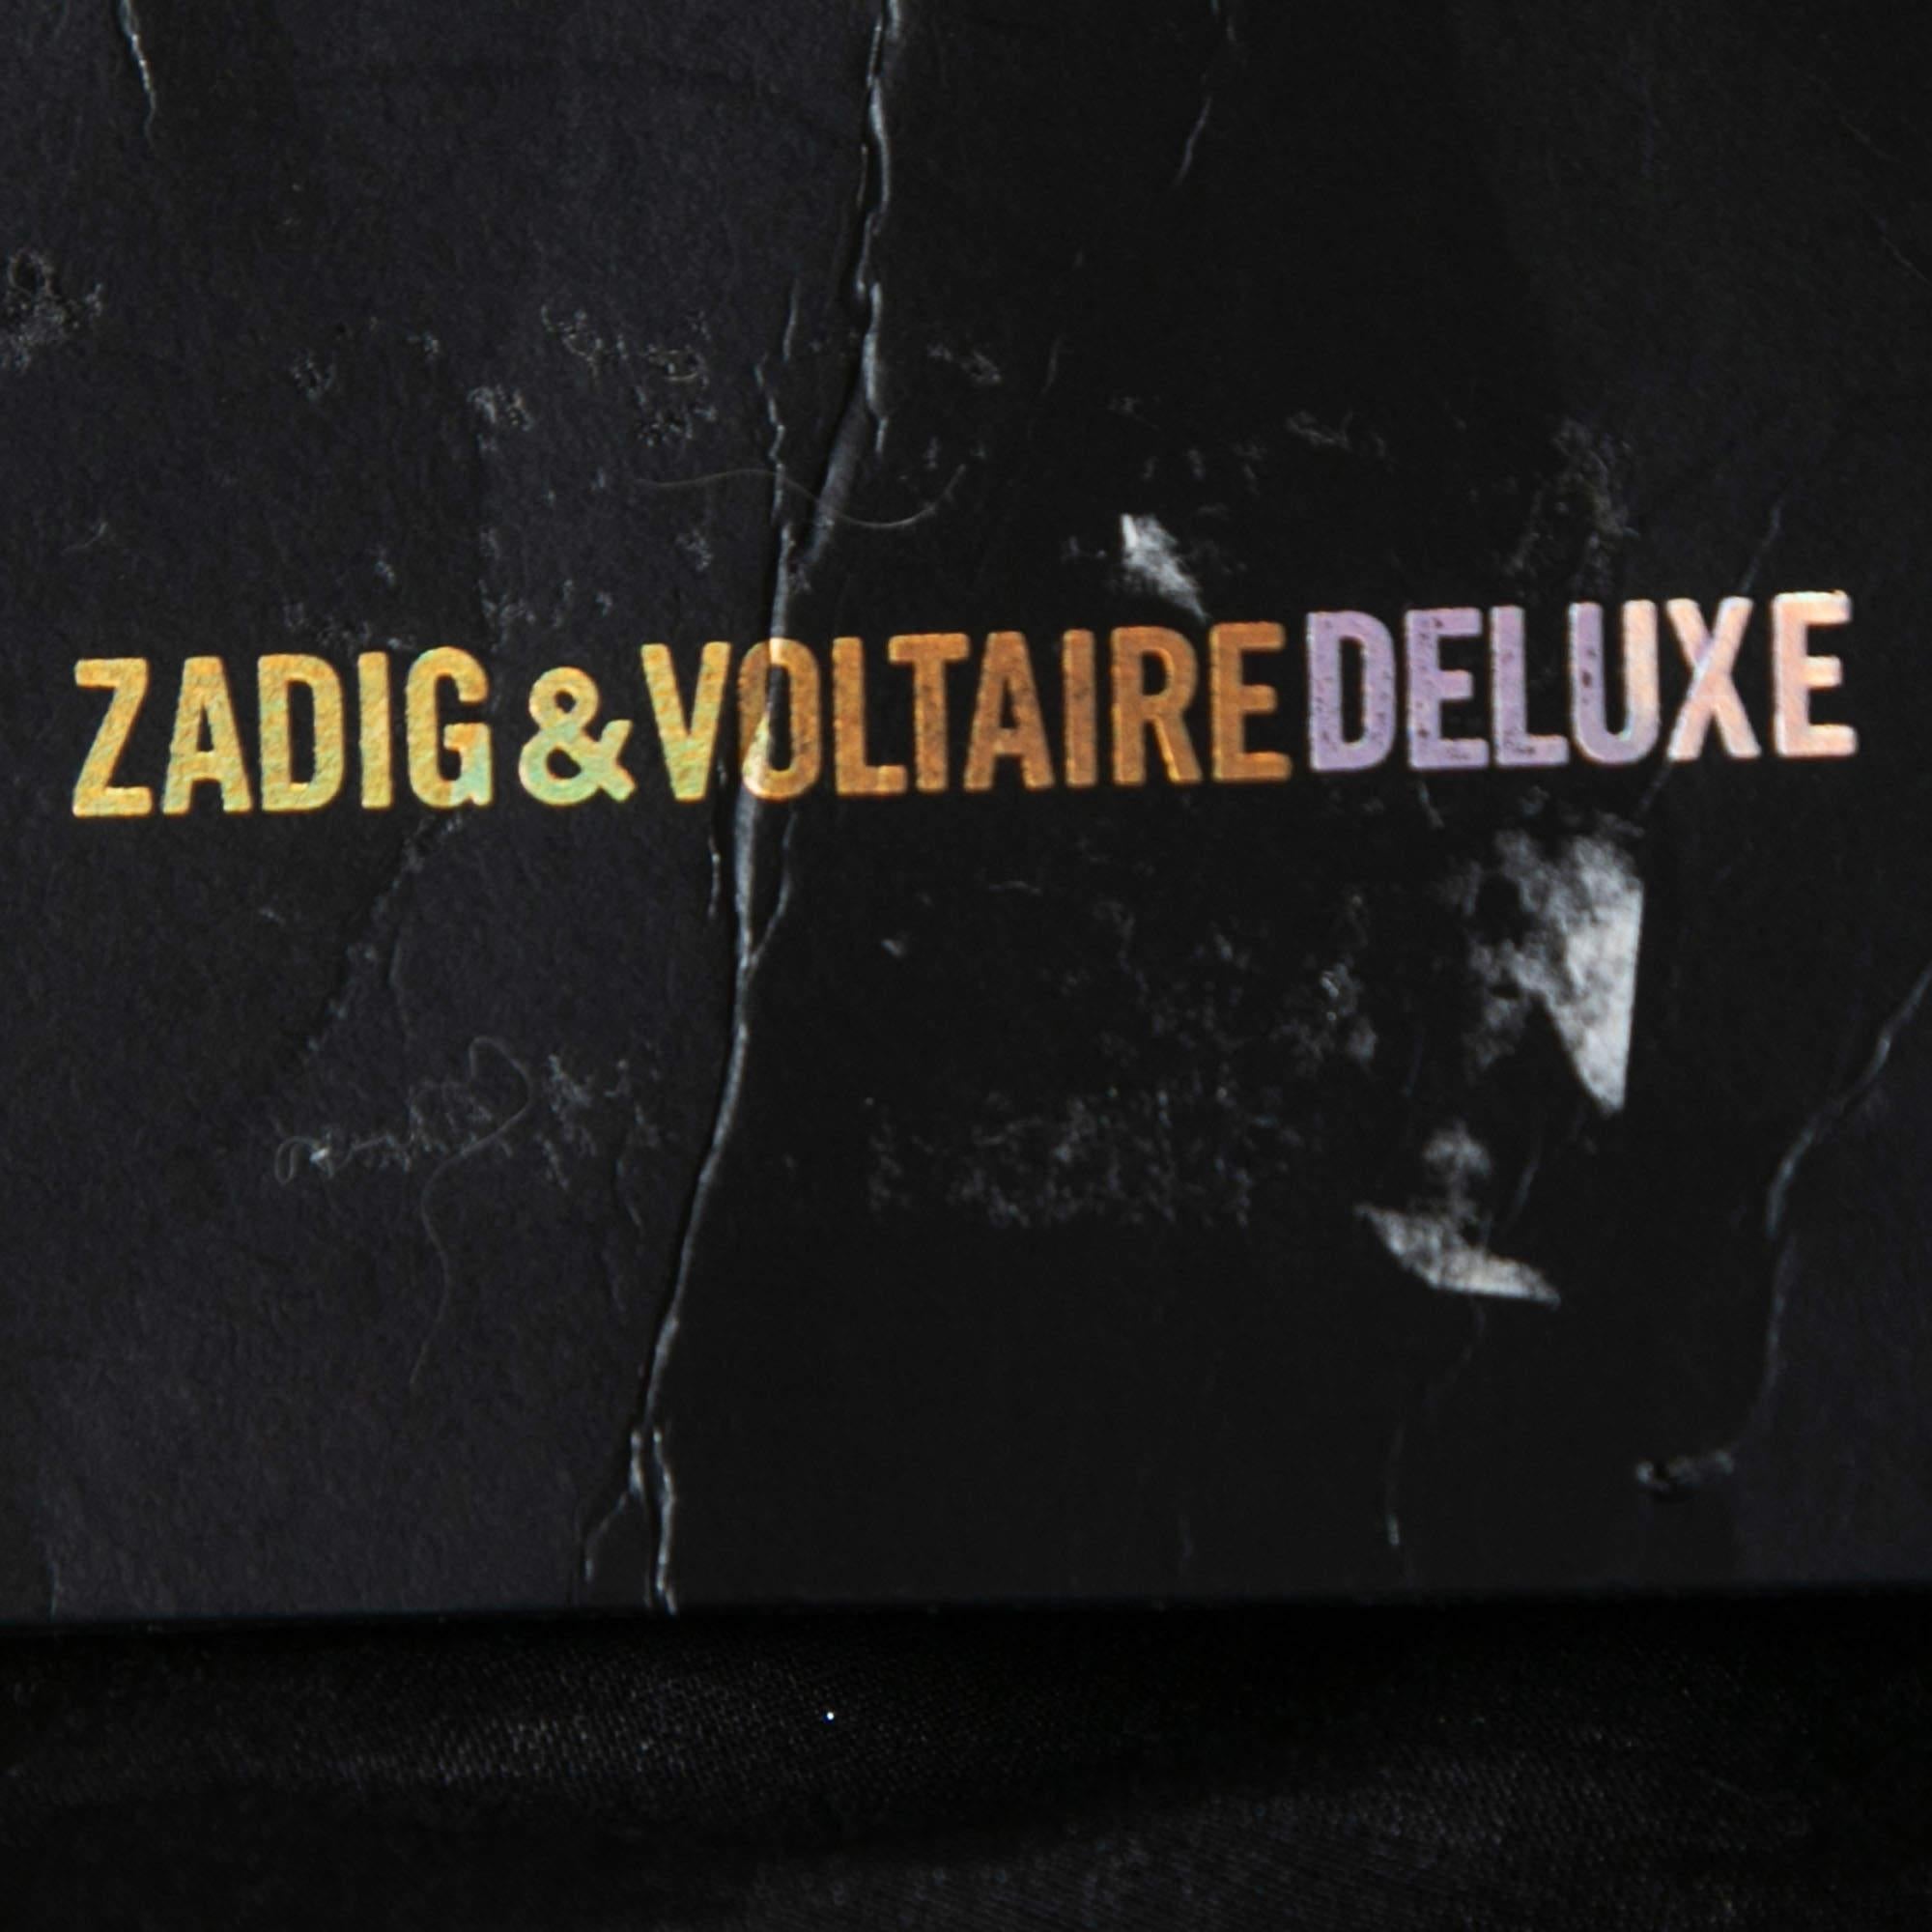 Women's Zadig & Voltaire Deluxe Black Sequined Vest M